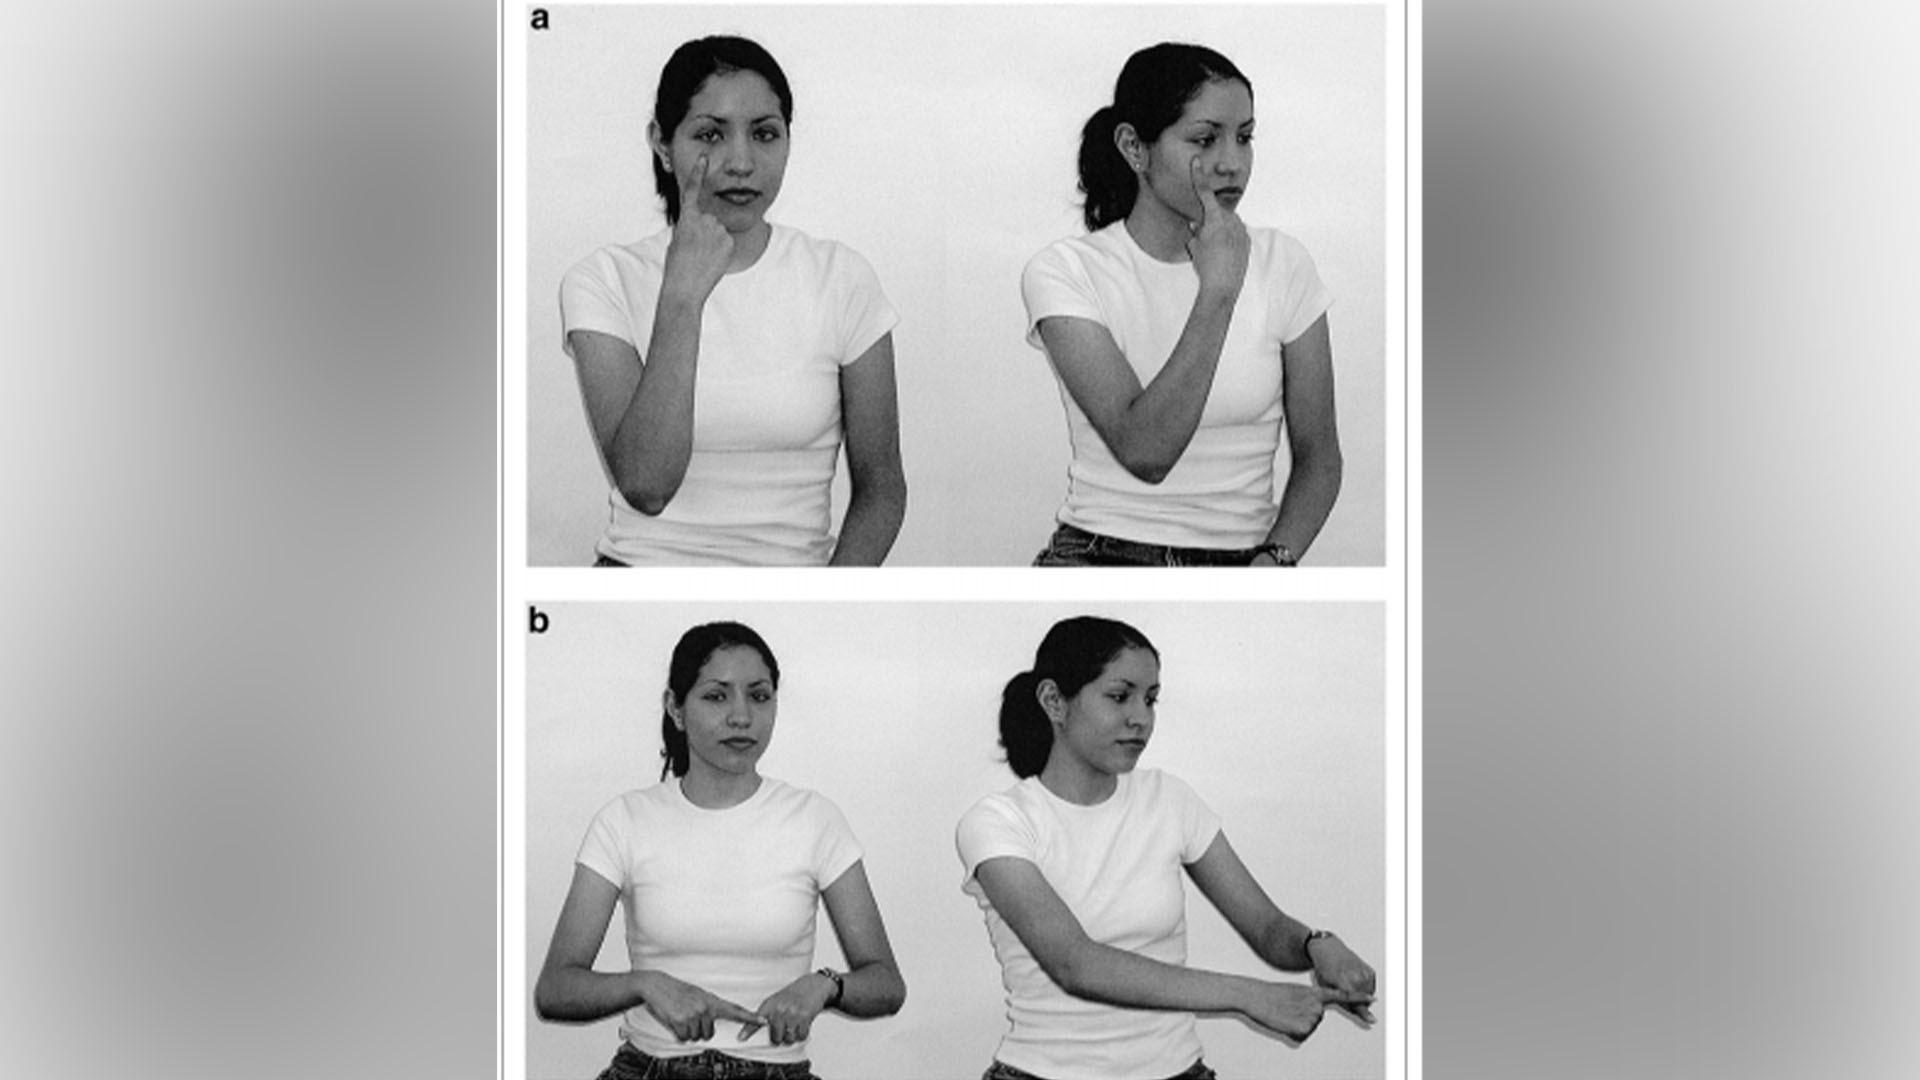 Verben ”se” och ”betala” på nicaraguanskt teckenspråk, i två olika verbformer var. Foto: Senghas, Ann. ”The Emergence of Two Functions for Spatial Devices in Nicaraguan Sign Language.” Karger.com. Karger, 2010.
Licens cc-by-sa 3.0